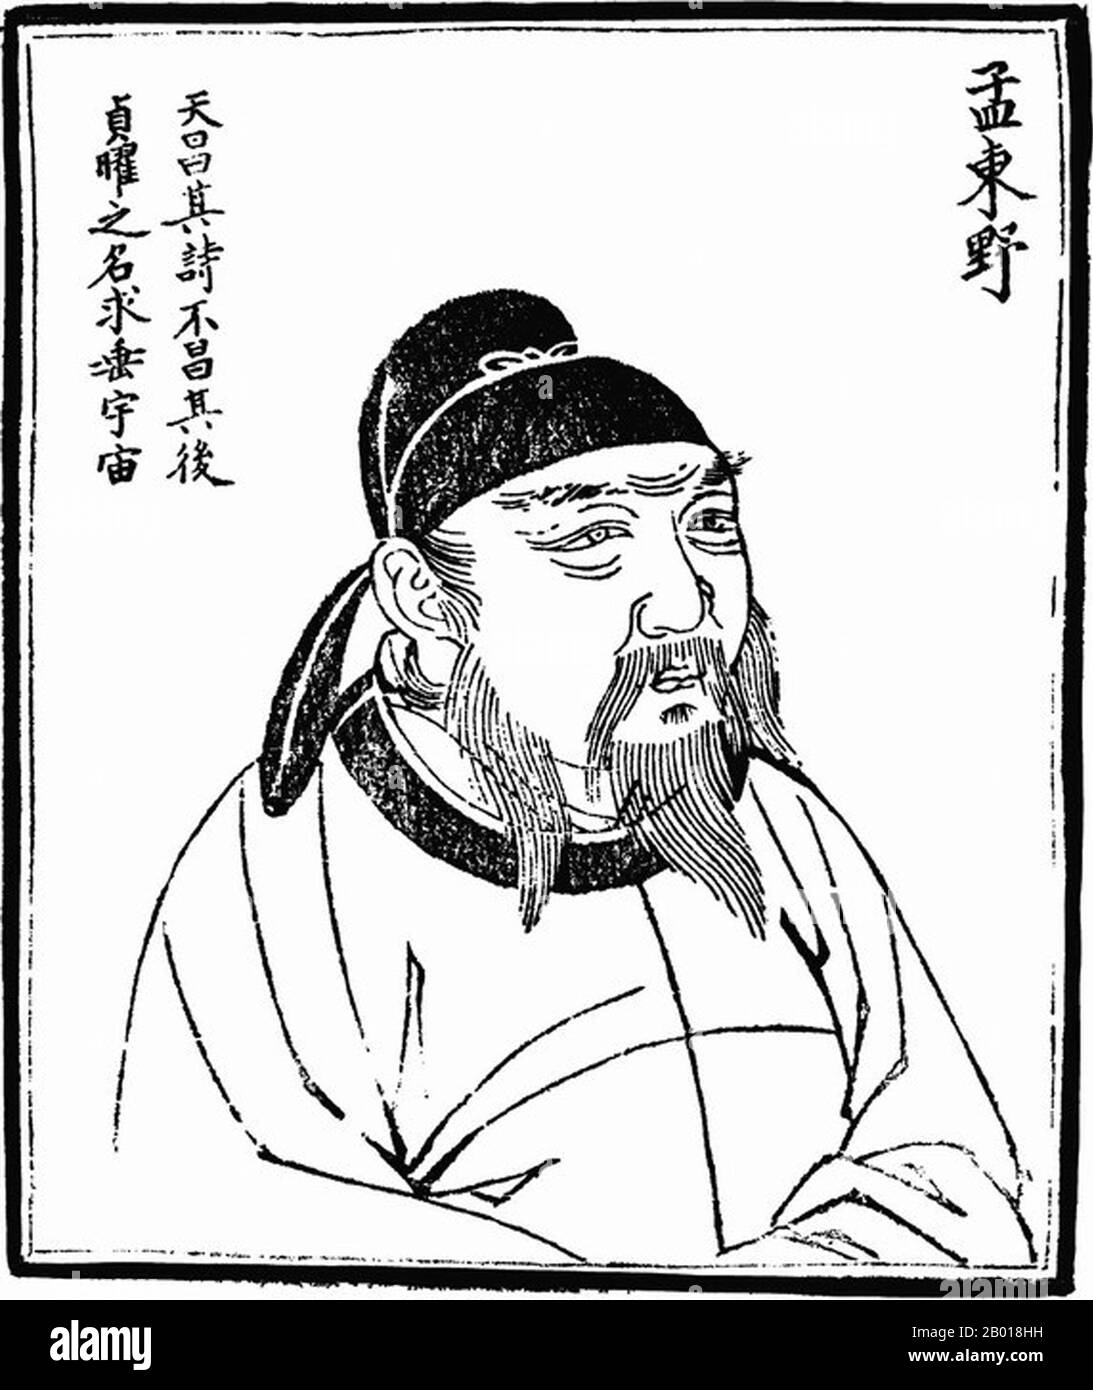 China: Meng Jiao (751-814), berühmter Dichter der Tang Dynastie (618-907). Holzschnitt aus 'Bilder alter Menschen in der Geschichte', c. 1498. Meng​ Jiao​ (Meng Chiao) war ein Dichter der Tang Dynastie. Als Folge dessen, dass Meng Jiao selbst die erste Stufe des Prüfungssystems nicht bestanden hatte, war er zu einem Leben in Armut und Not verurteilt. Das hinderte seinen Erfolg als Dichter jedoch nicht. Er war Teil des Kreises um den Dichter Han Yu. Seine Poesie, die oft auf den Themen Armut und Kälte basiert, wird durch die starken - und manchmal schockierenden - Bilder verkörpert, die Han Yu befürwortet. Stockfoto